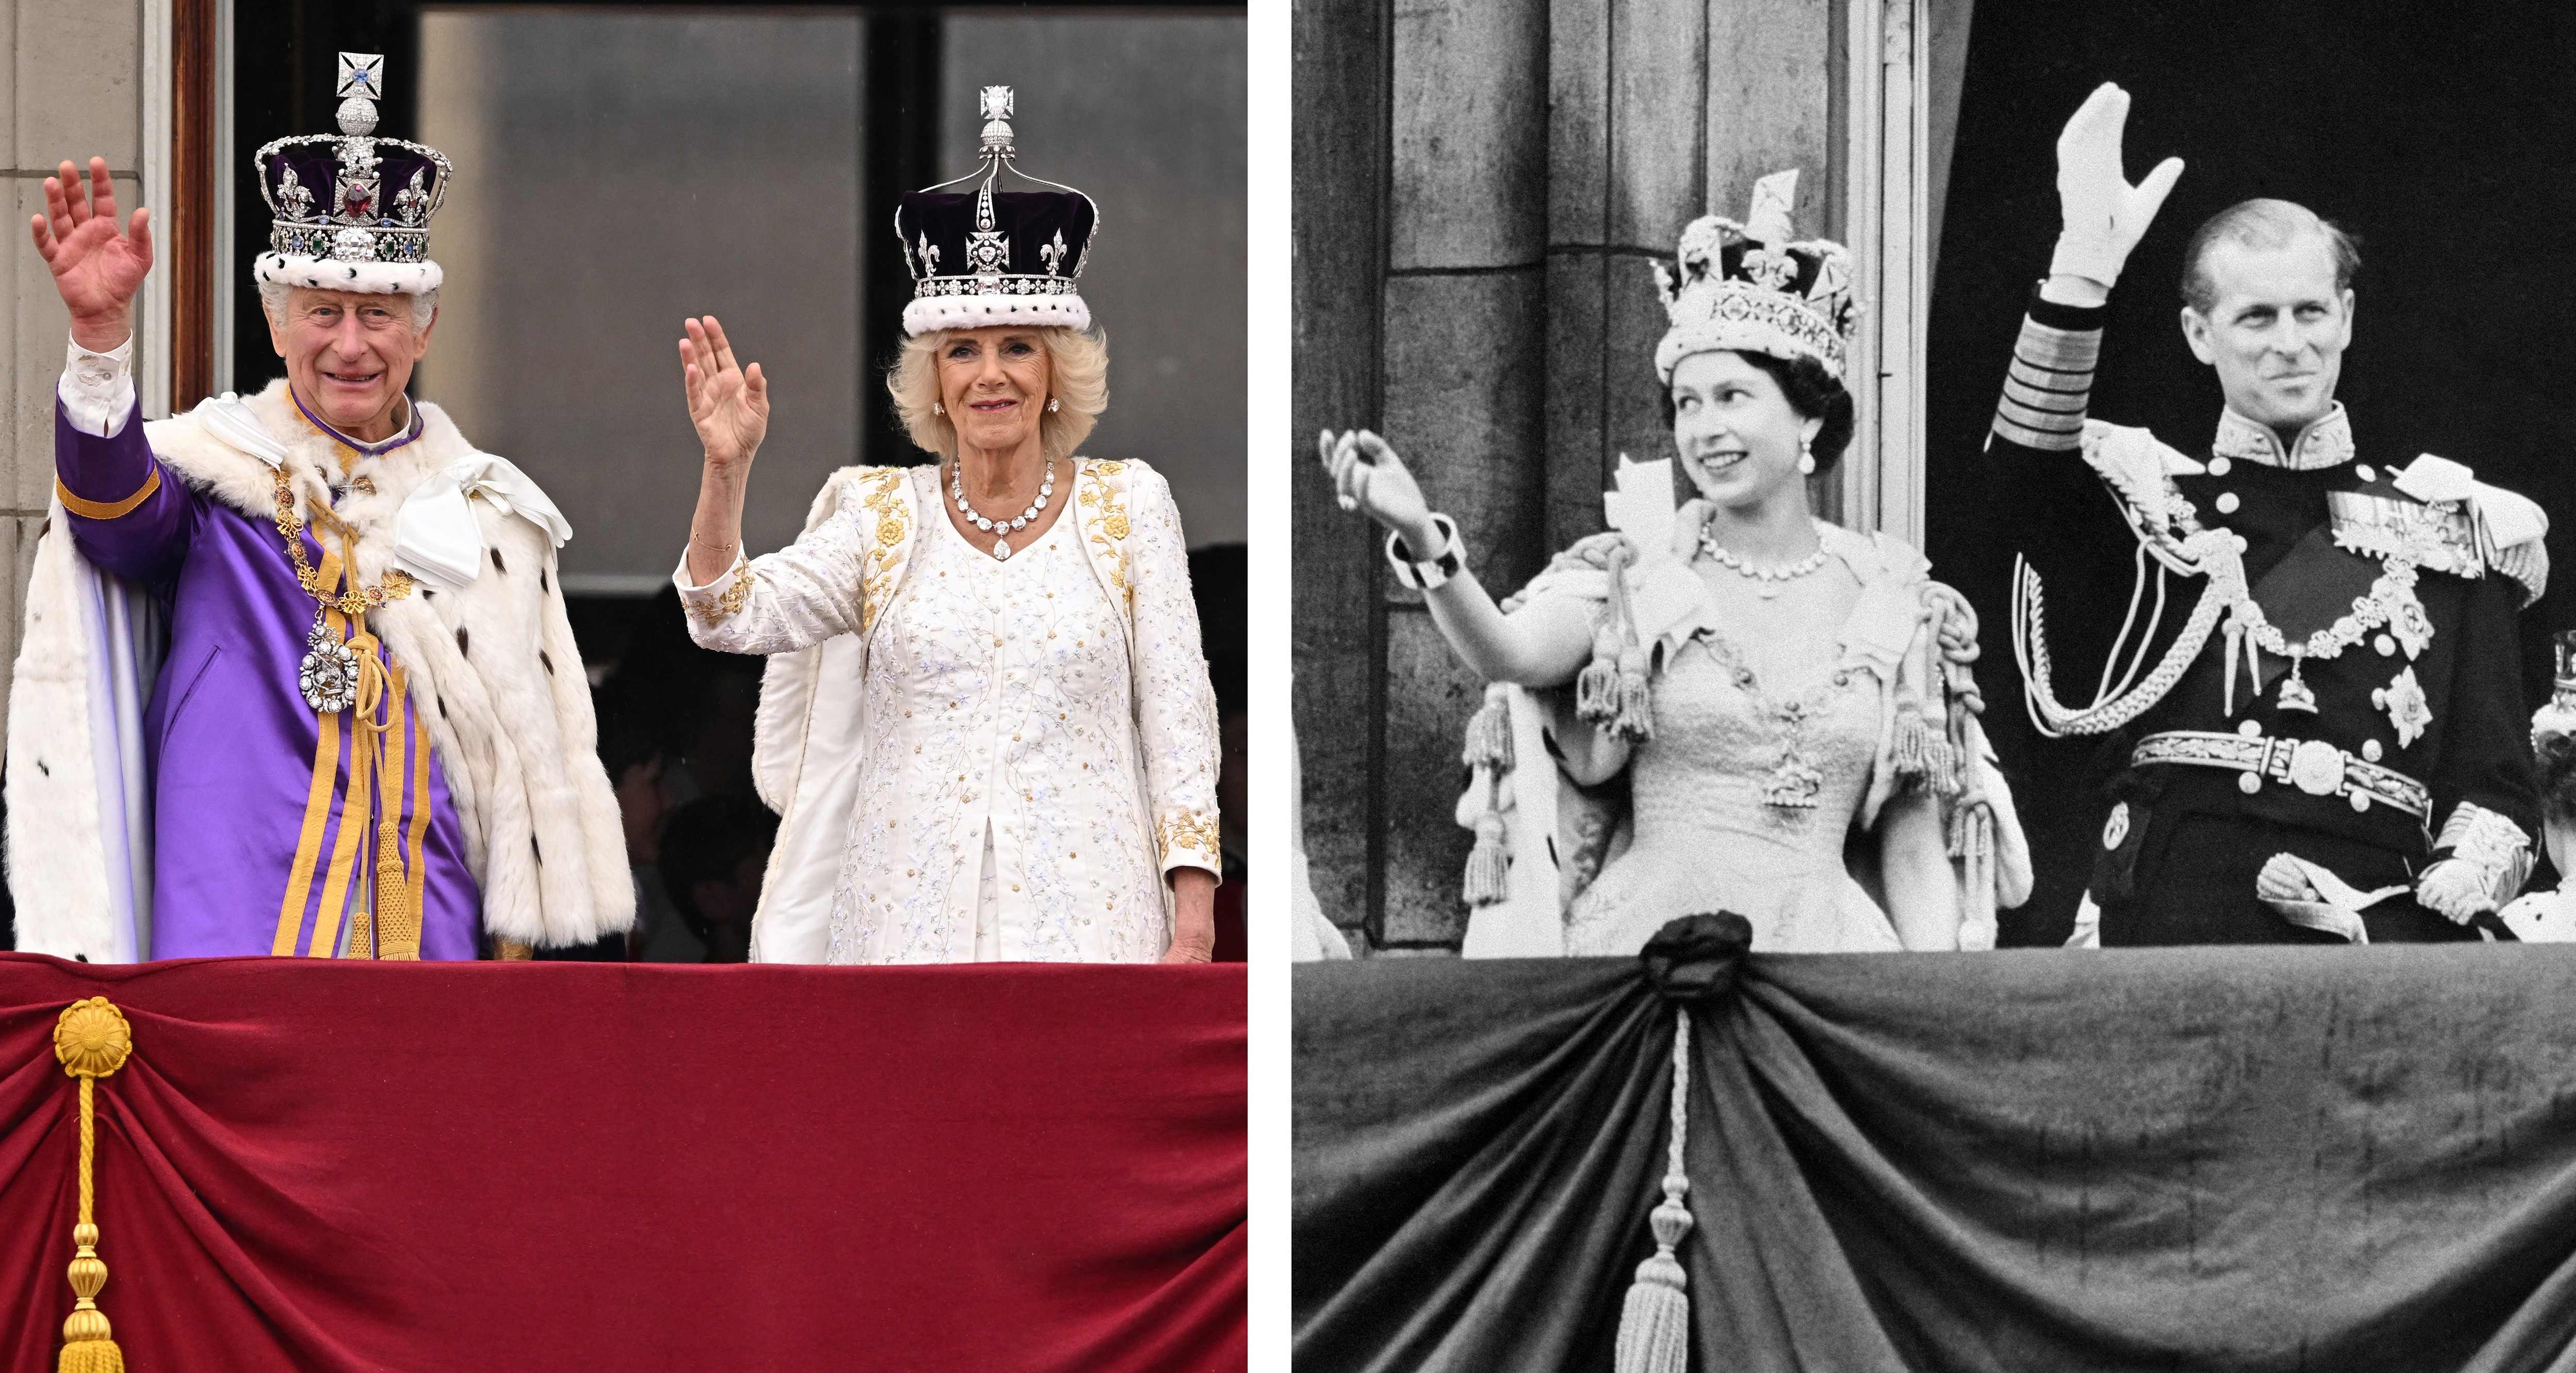 왼쪽 사진은 6일(현지시간) 런런 버킹엄궁 발코니에서 손을 흔들고 있는 찰스 3세 영국 국왕과 카밀라 여왕. 오른쪽 사진은 1953년 6월 2일 같은 장소에서 손을 흔들고 있는 엘리자베스 2세 영국 여왕과 남편 필립 공. 런던 AFP 연합뉴스